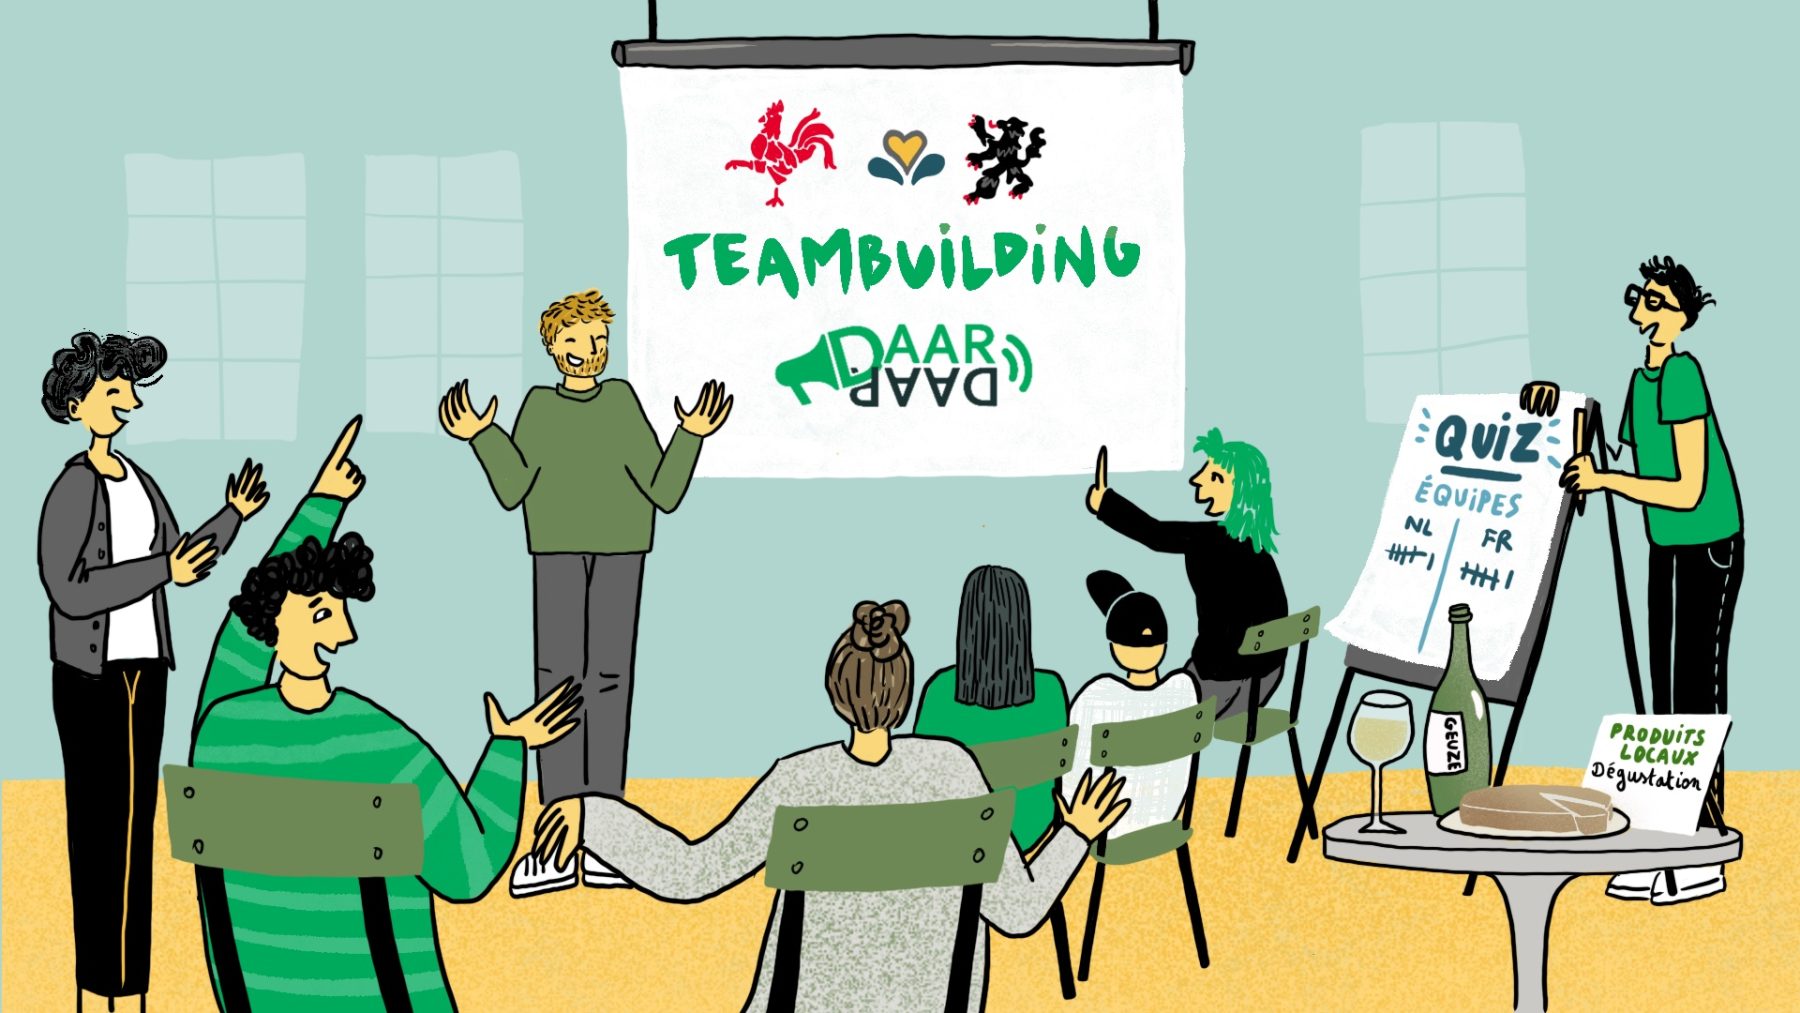 Win een tweetalige teambuildingworkshop van DaarDaar voor uw bedrijf!